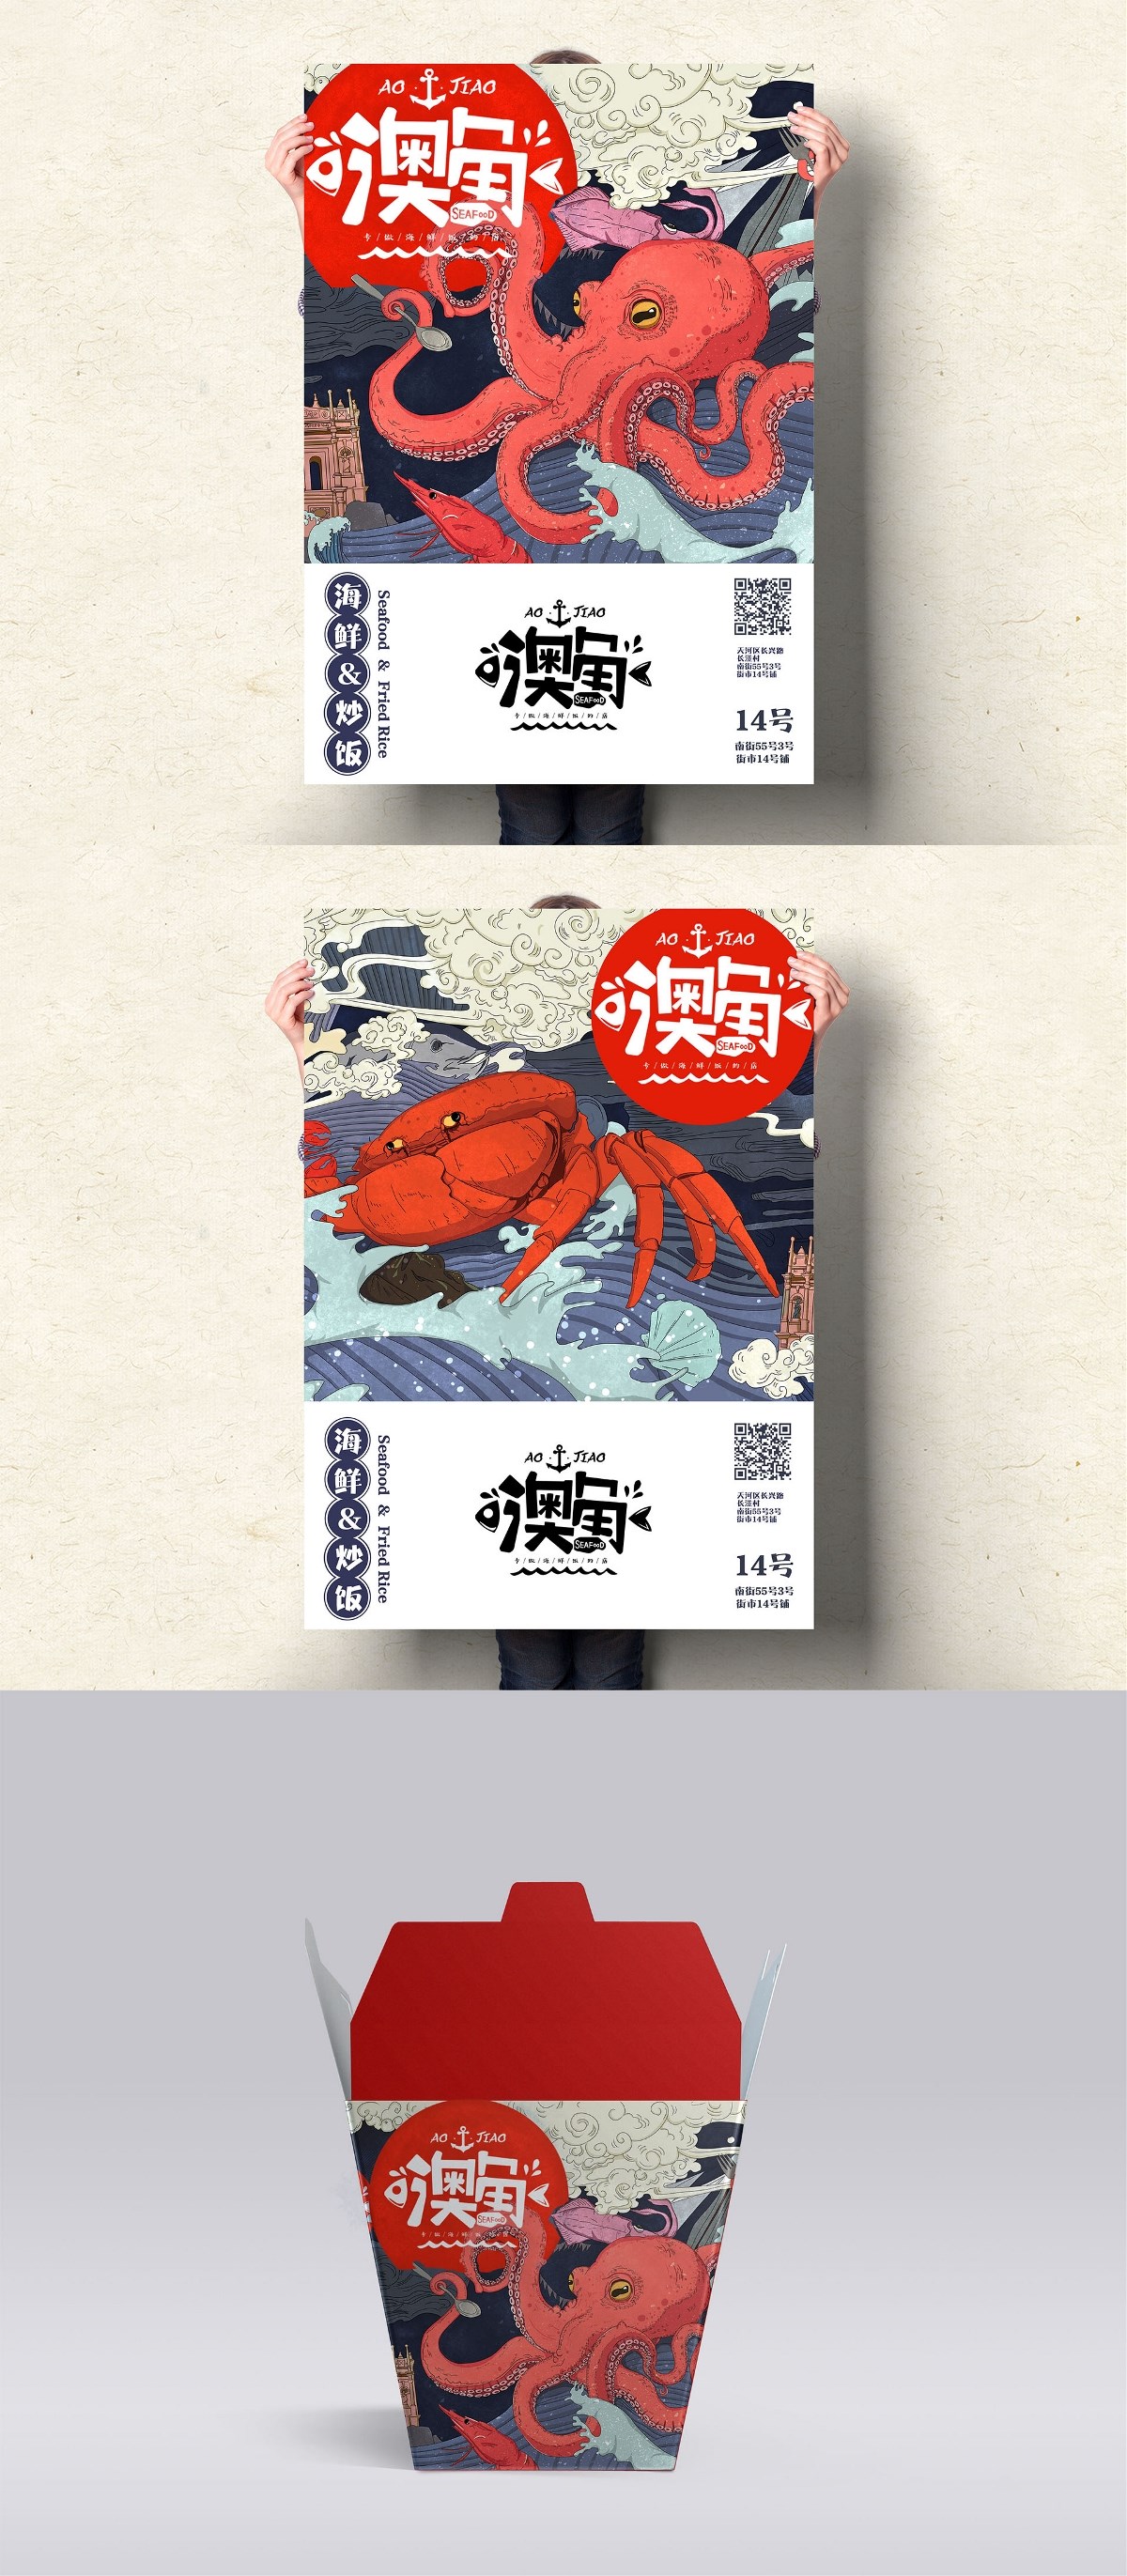 ‘澳角‘海鲜炒饭品牌整合设计